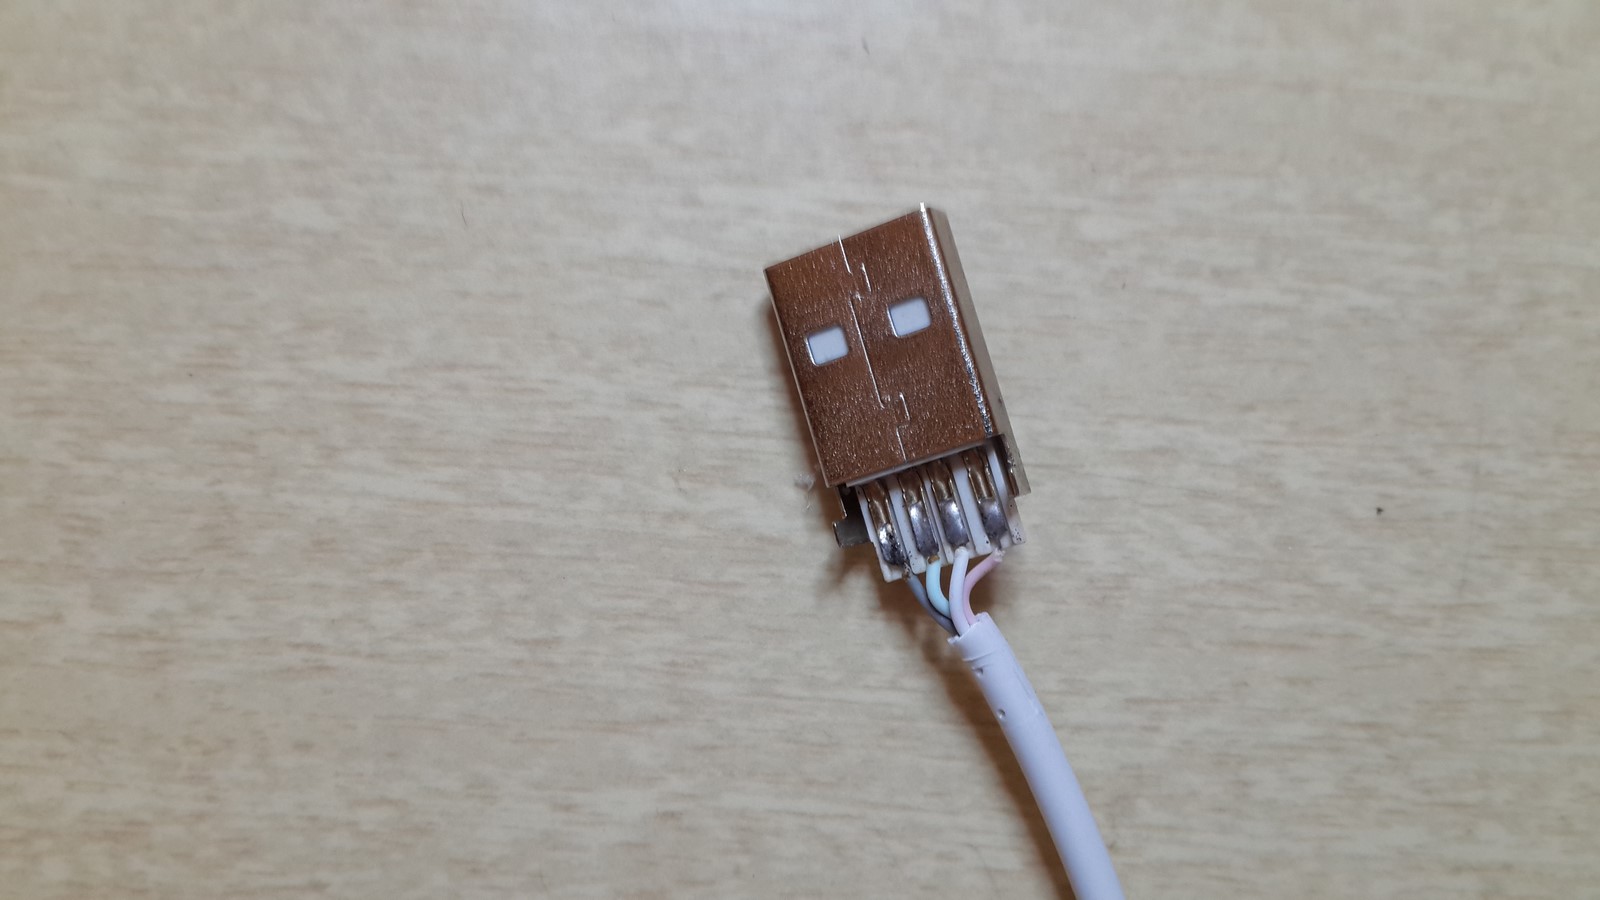 USB cable tear down